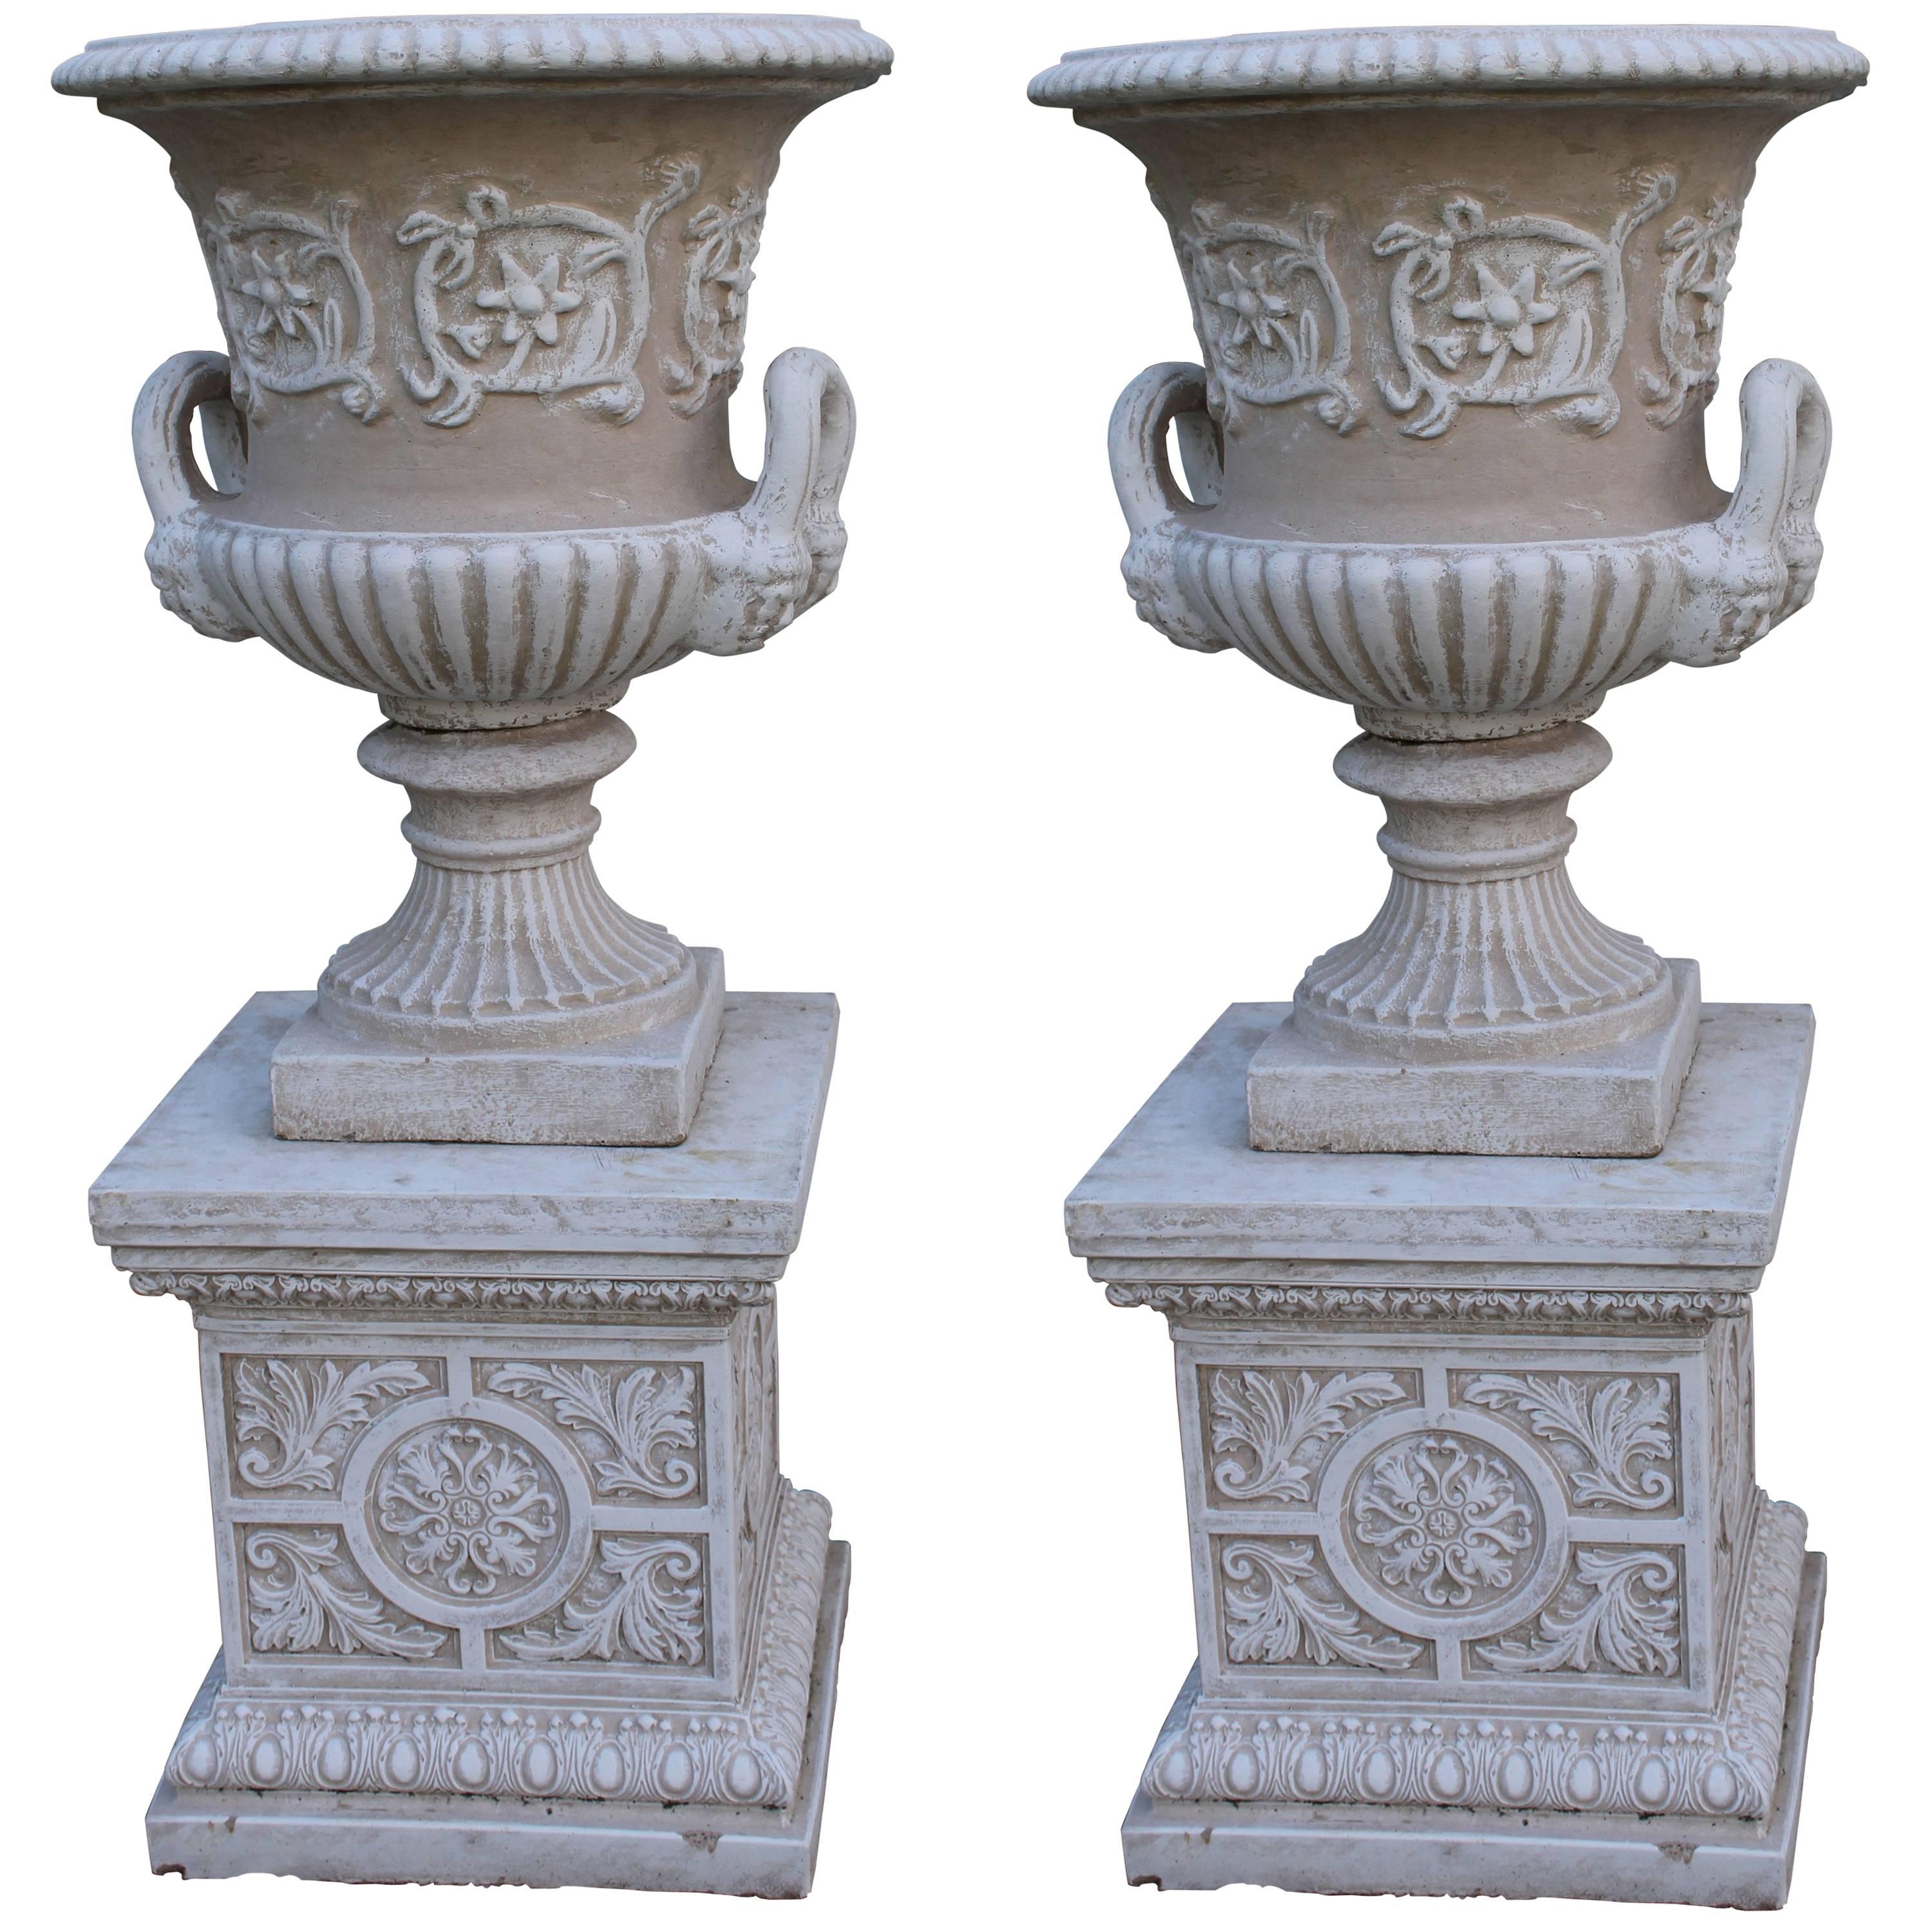 Pair of Heavy Composite Stone Garden Urns on Pedestals